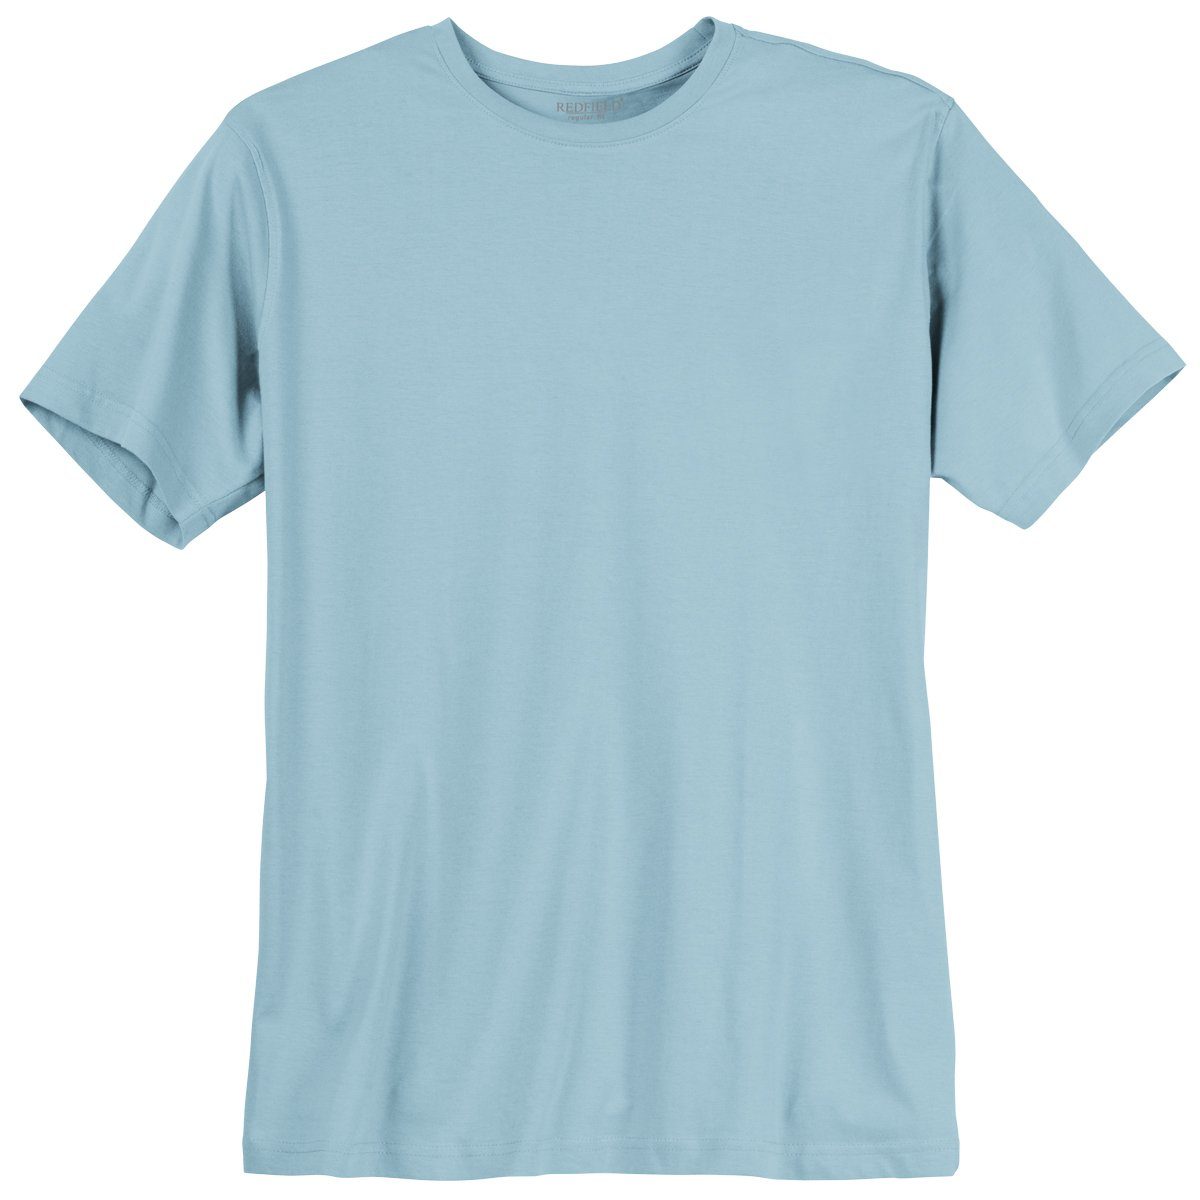 redfield Rundhalsshirt Übergrößen Redfield T-Shirt hellblau Modell Tom